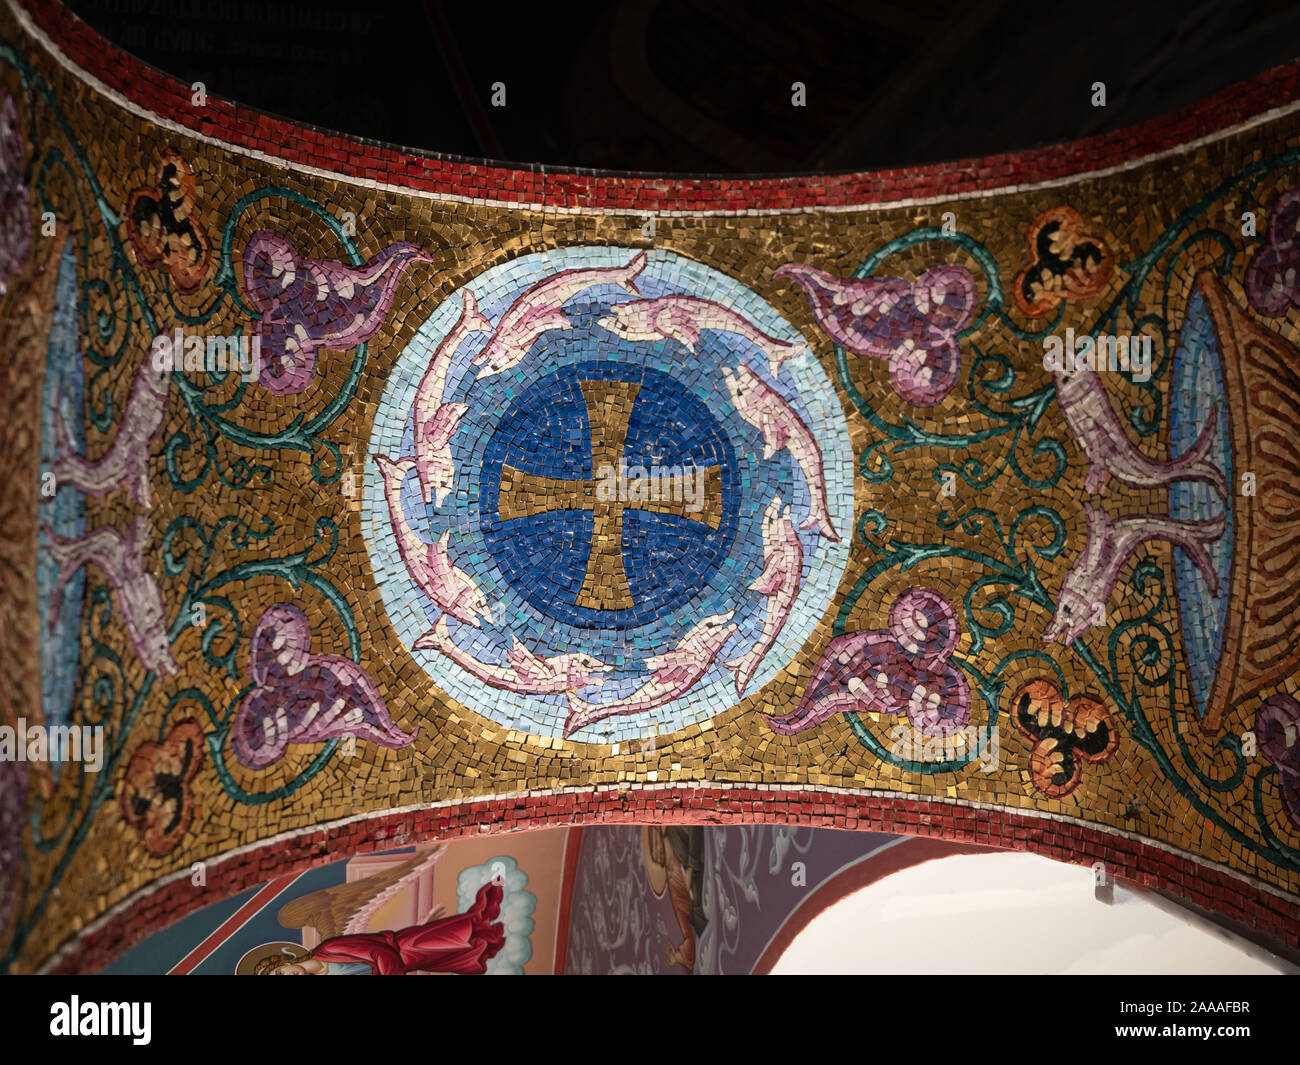 Cerca de intrincado mosaico con fondo de oro, una cruz, delfines o marsopas, flores y vides que decoran un arco en la Bapistery de St. Foto de stock